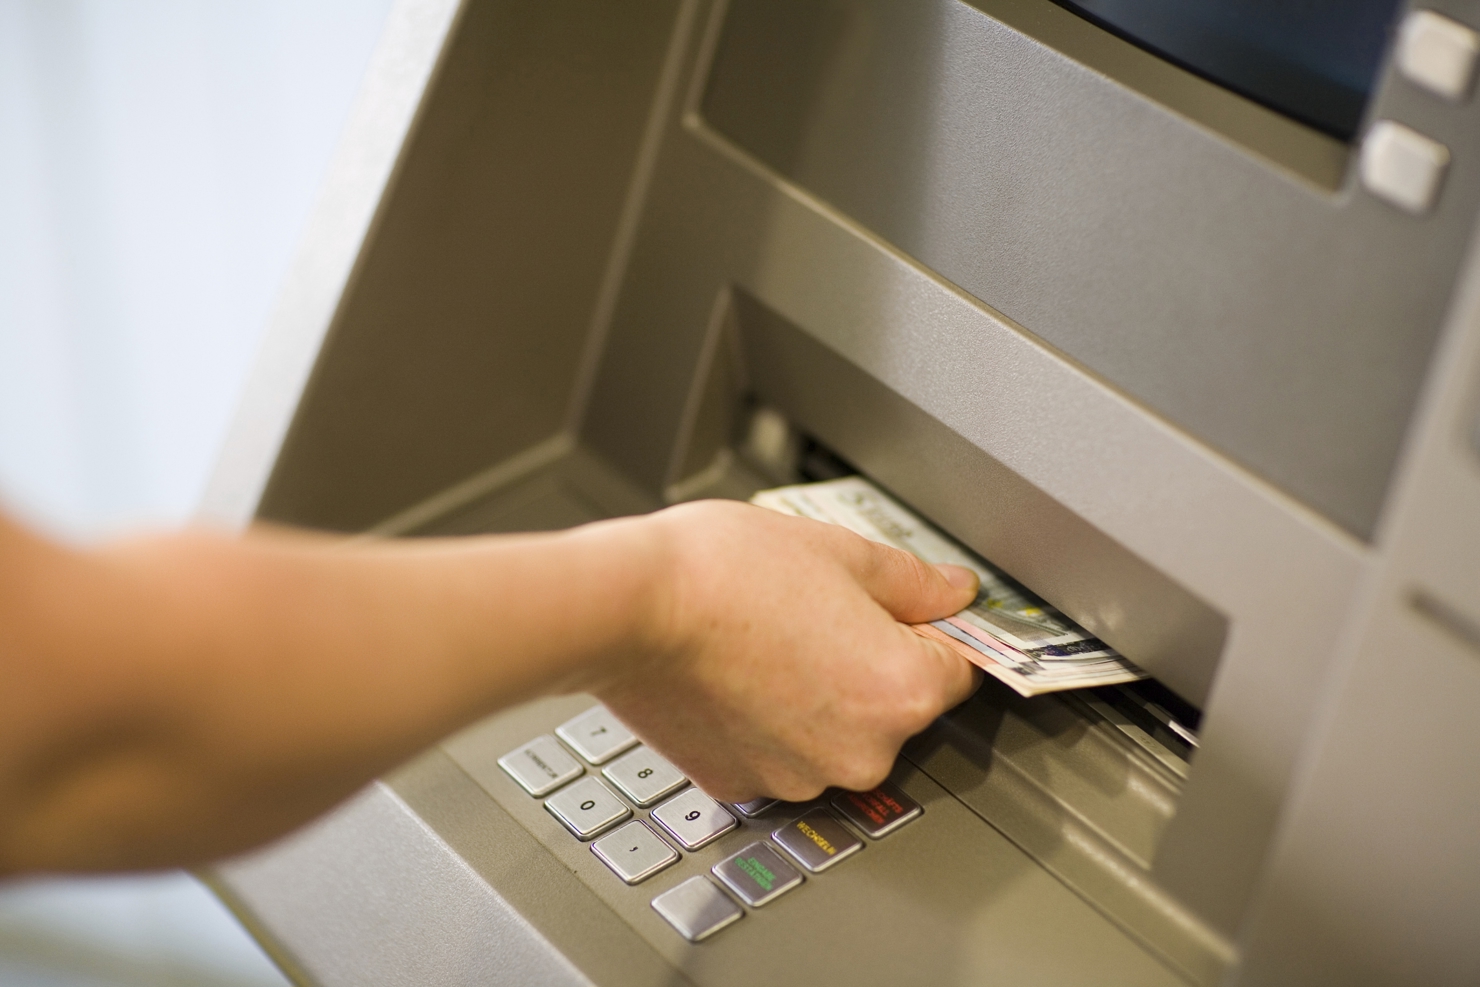 Ngân hàng Nhà nước vừa chỉ đạo các ngân hàng thương mại không được tăng phí rút tiền ATM nội mạng vào thời điểm này. Nguồn: internet